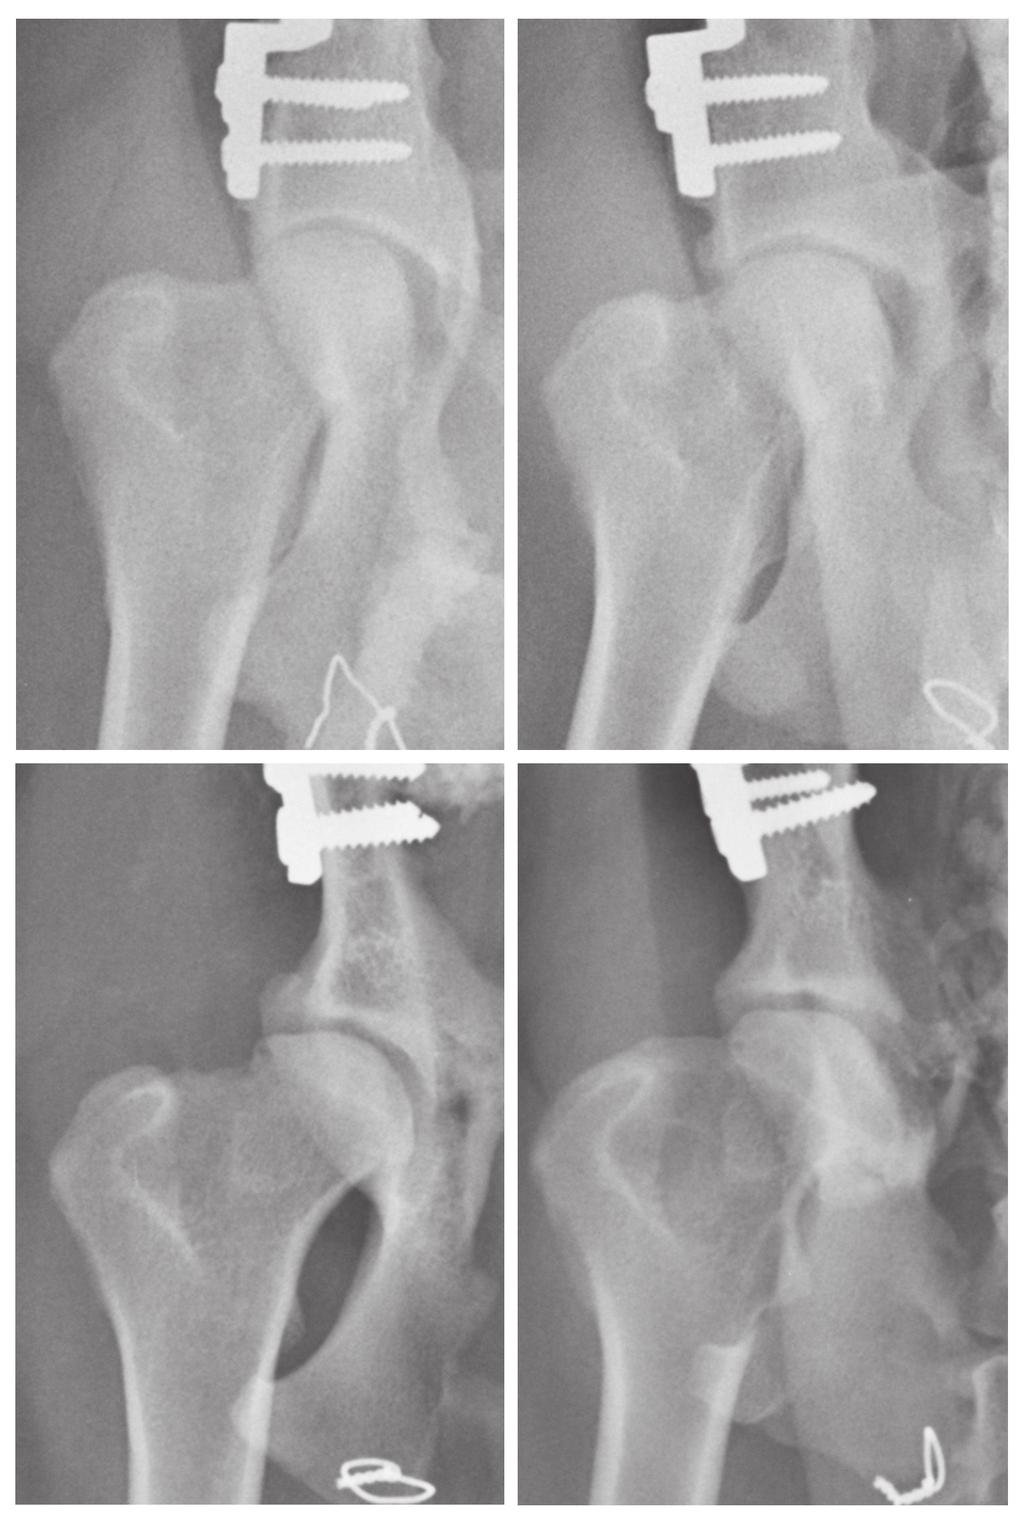 Abb. 2: Standards für Arthrosegrade postoperativ: Grad 0 (links oben): keine röntgenologisch sichtbare Arthrose; Grad 1 (rechts oben): Morgan Linie, Sklerosierung des kraniodorsalen Pfannenrandes,